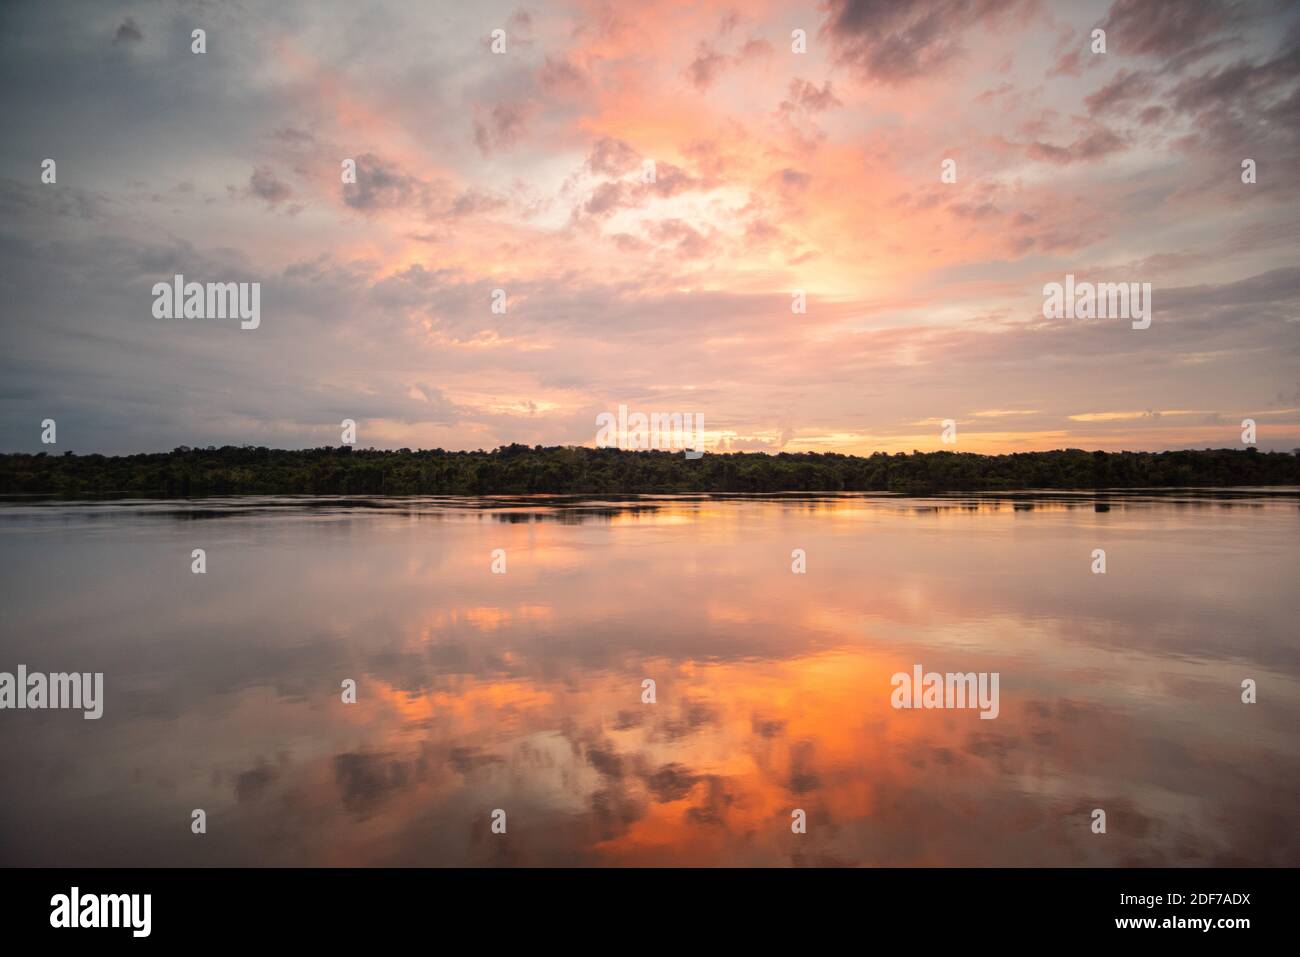 Sonnenaufgang auf dem Rio Negro. Die aufgehende Sonne scheint die Wolken in mystischen roten Farben. Die ganze Szene spiegelt sich im ruhigen Wasser wider. Stockfoto